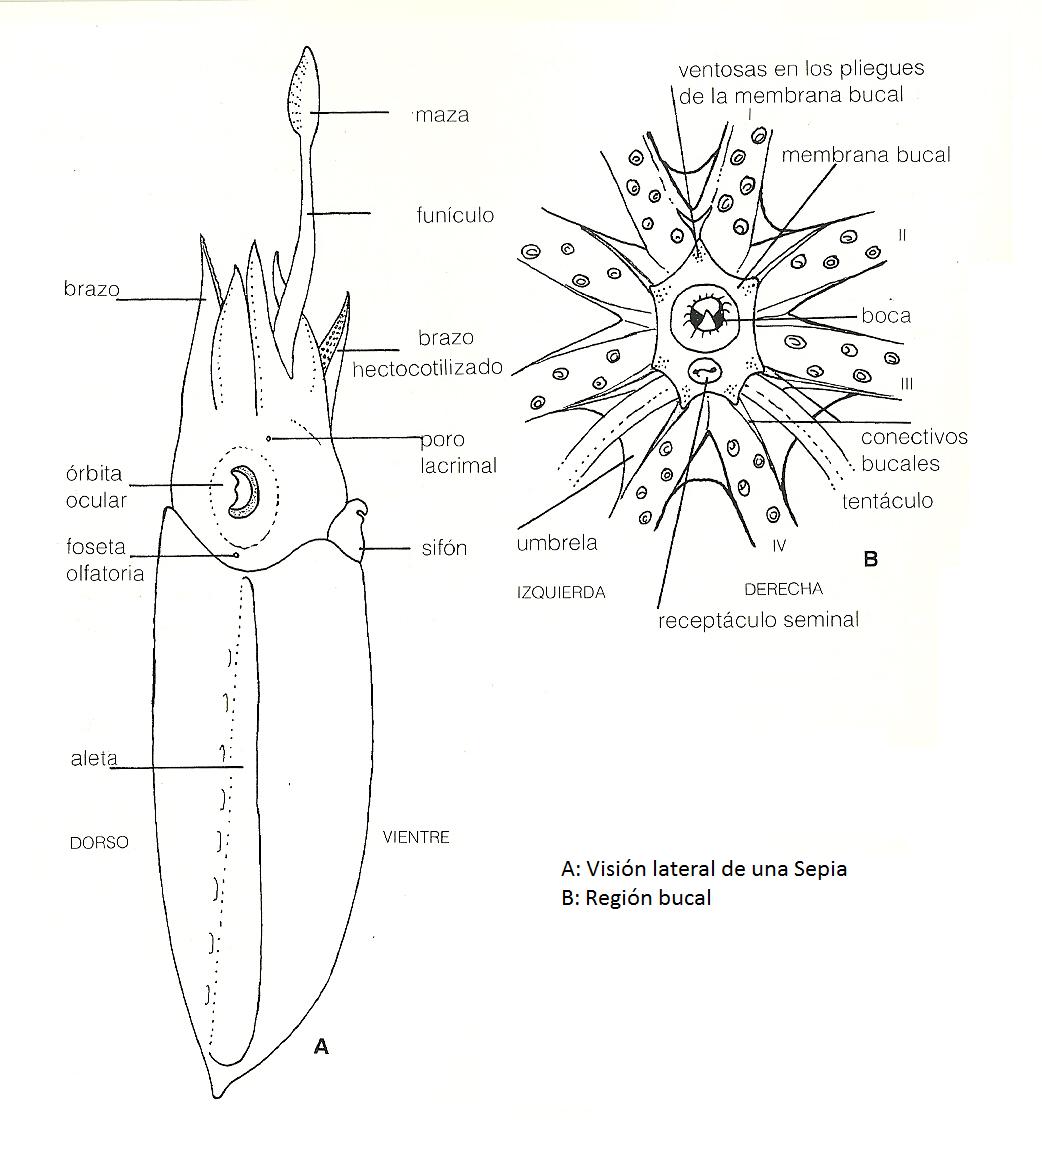 imagen 6: Anatomia interna de una sepia